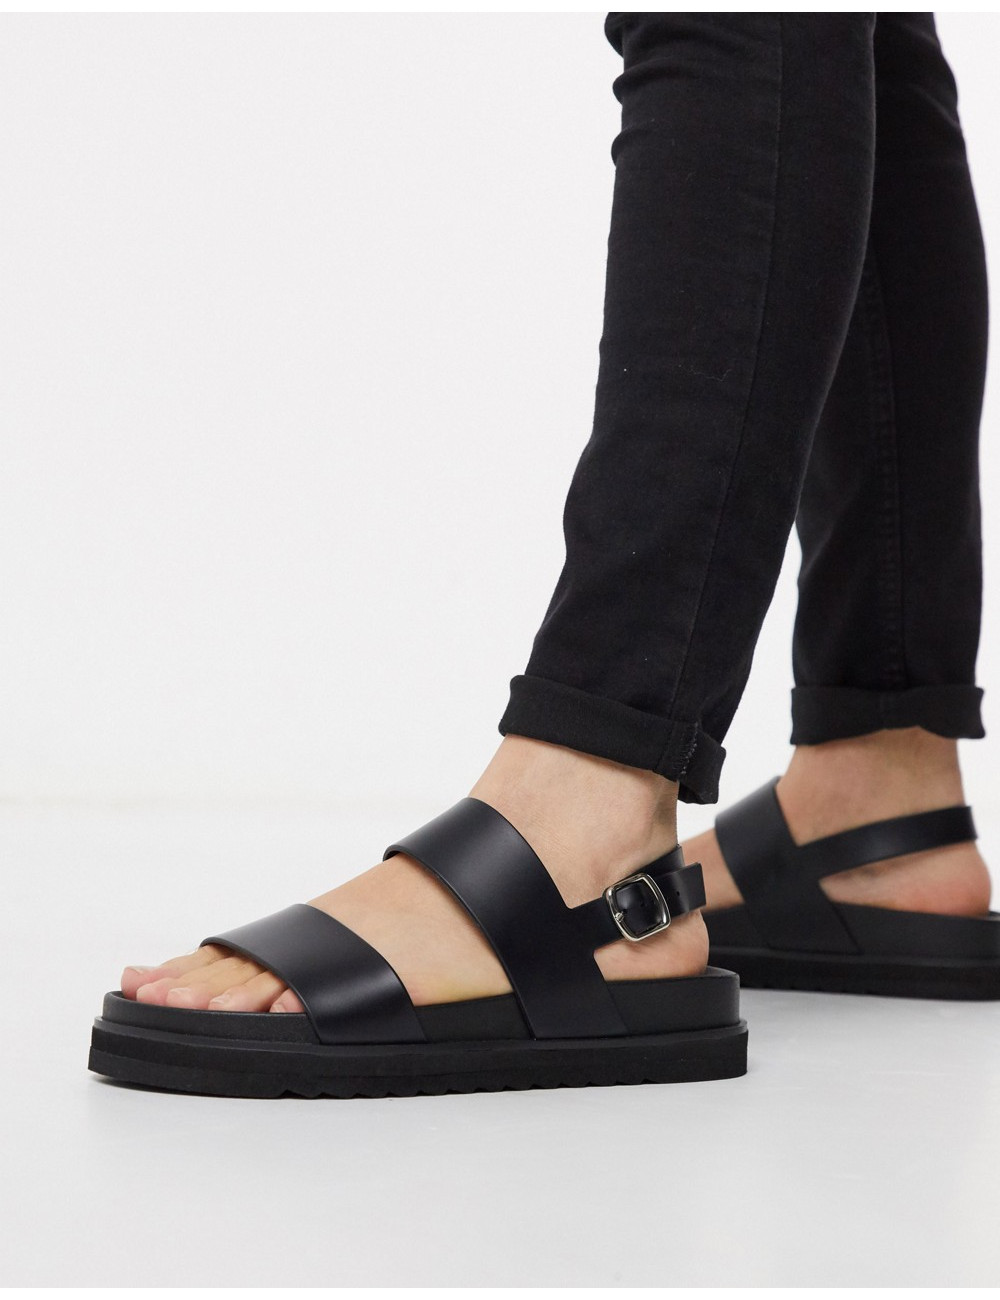 ASOS DESIGN sandals in black